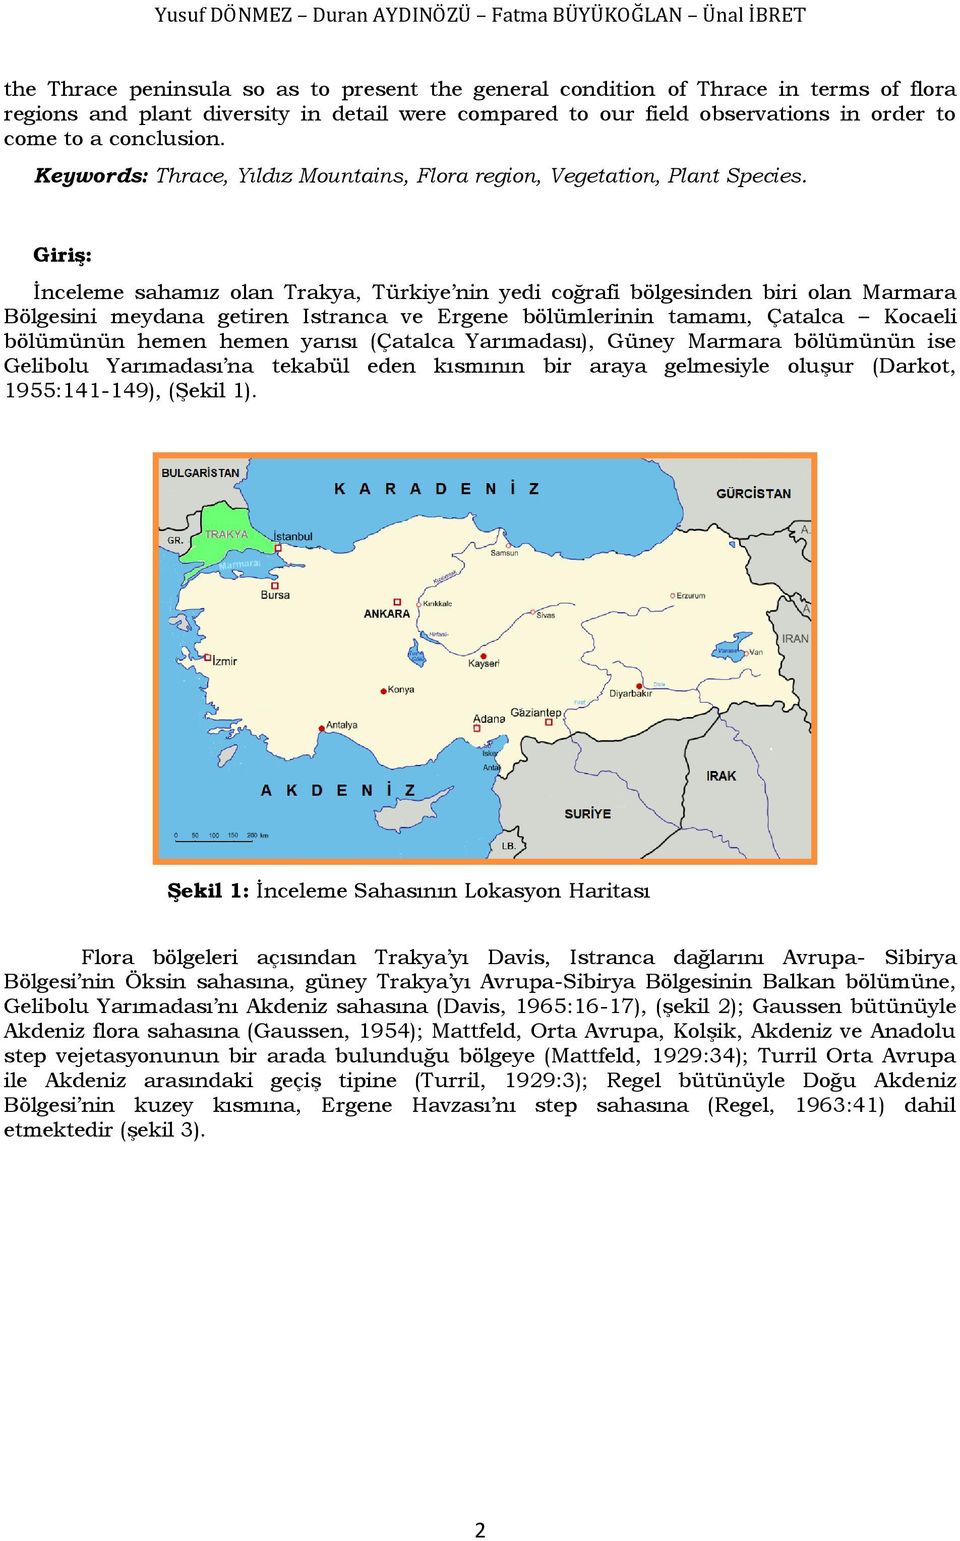 Giriş: İnceleme sahamız olan Trakya, Türkiye nin yedi coğrafi bölgesinden biri olan Marmara Bölgesini meydana getiren Istranca ve Ergene bölümlerinin tamamı, Çatalca Kocaeli bölümünün hemen hemen